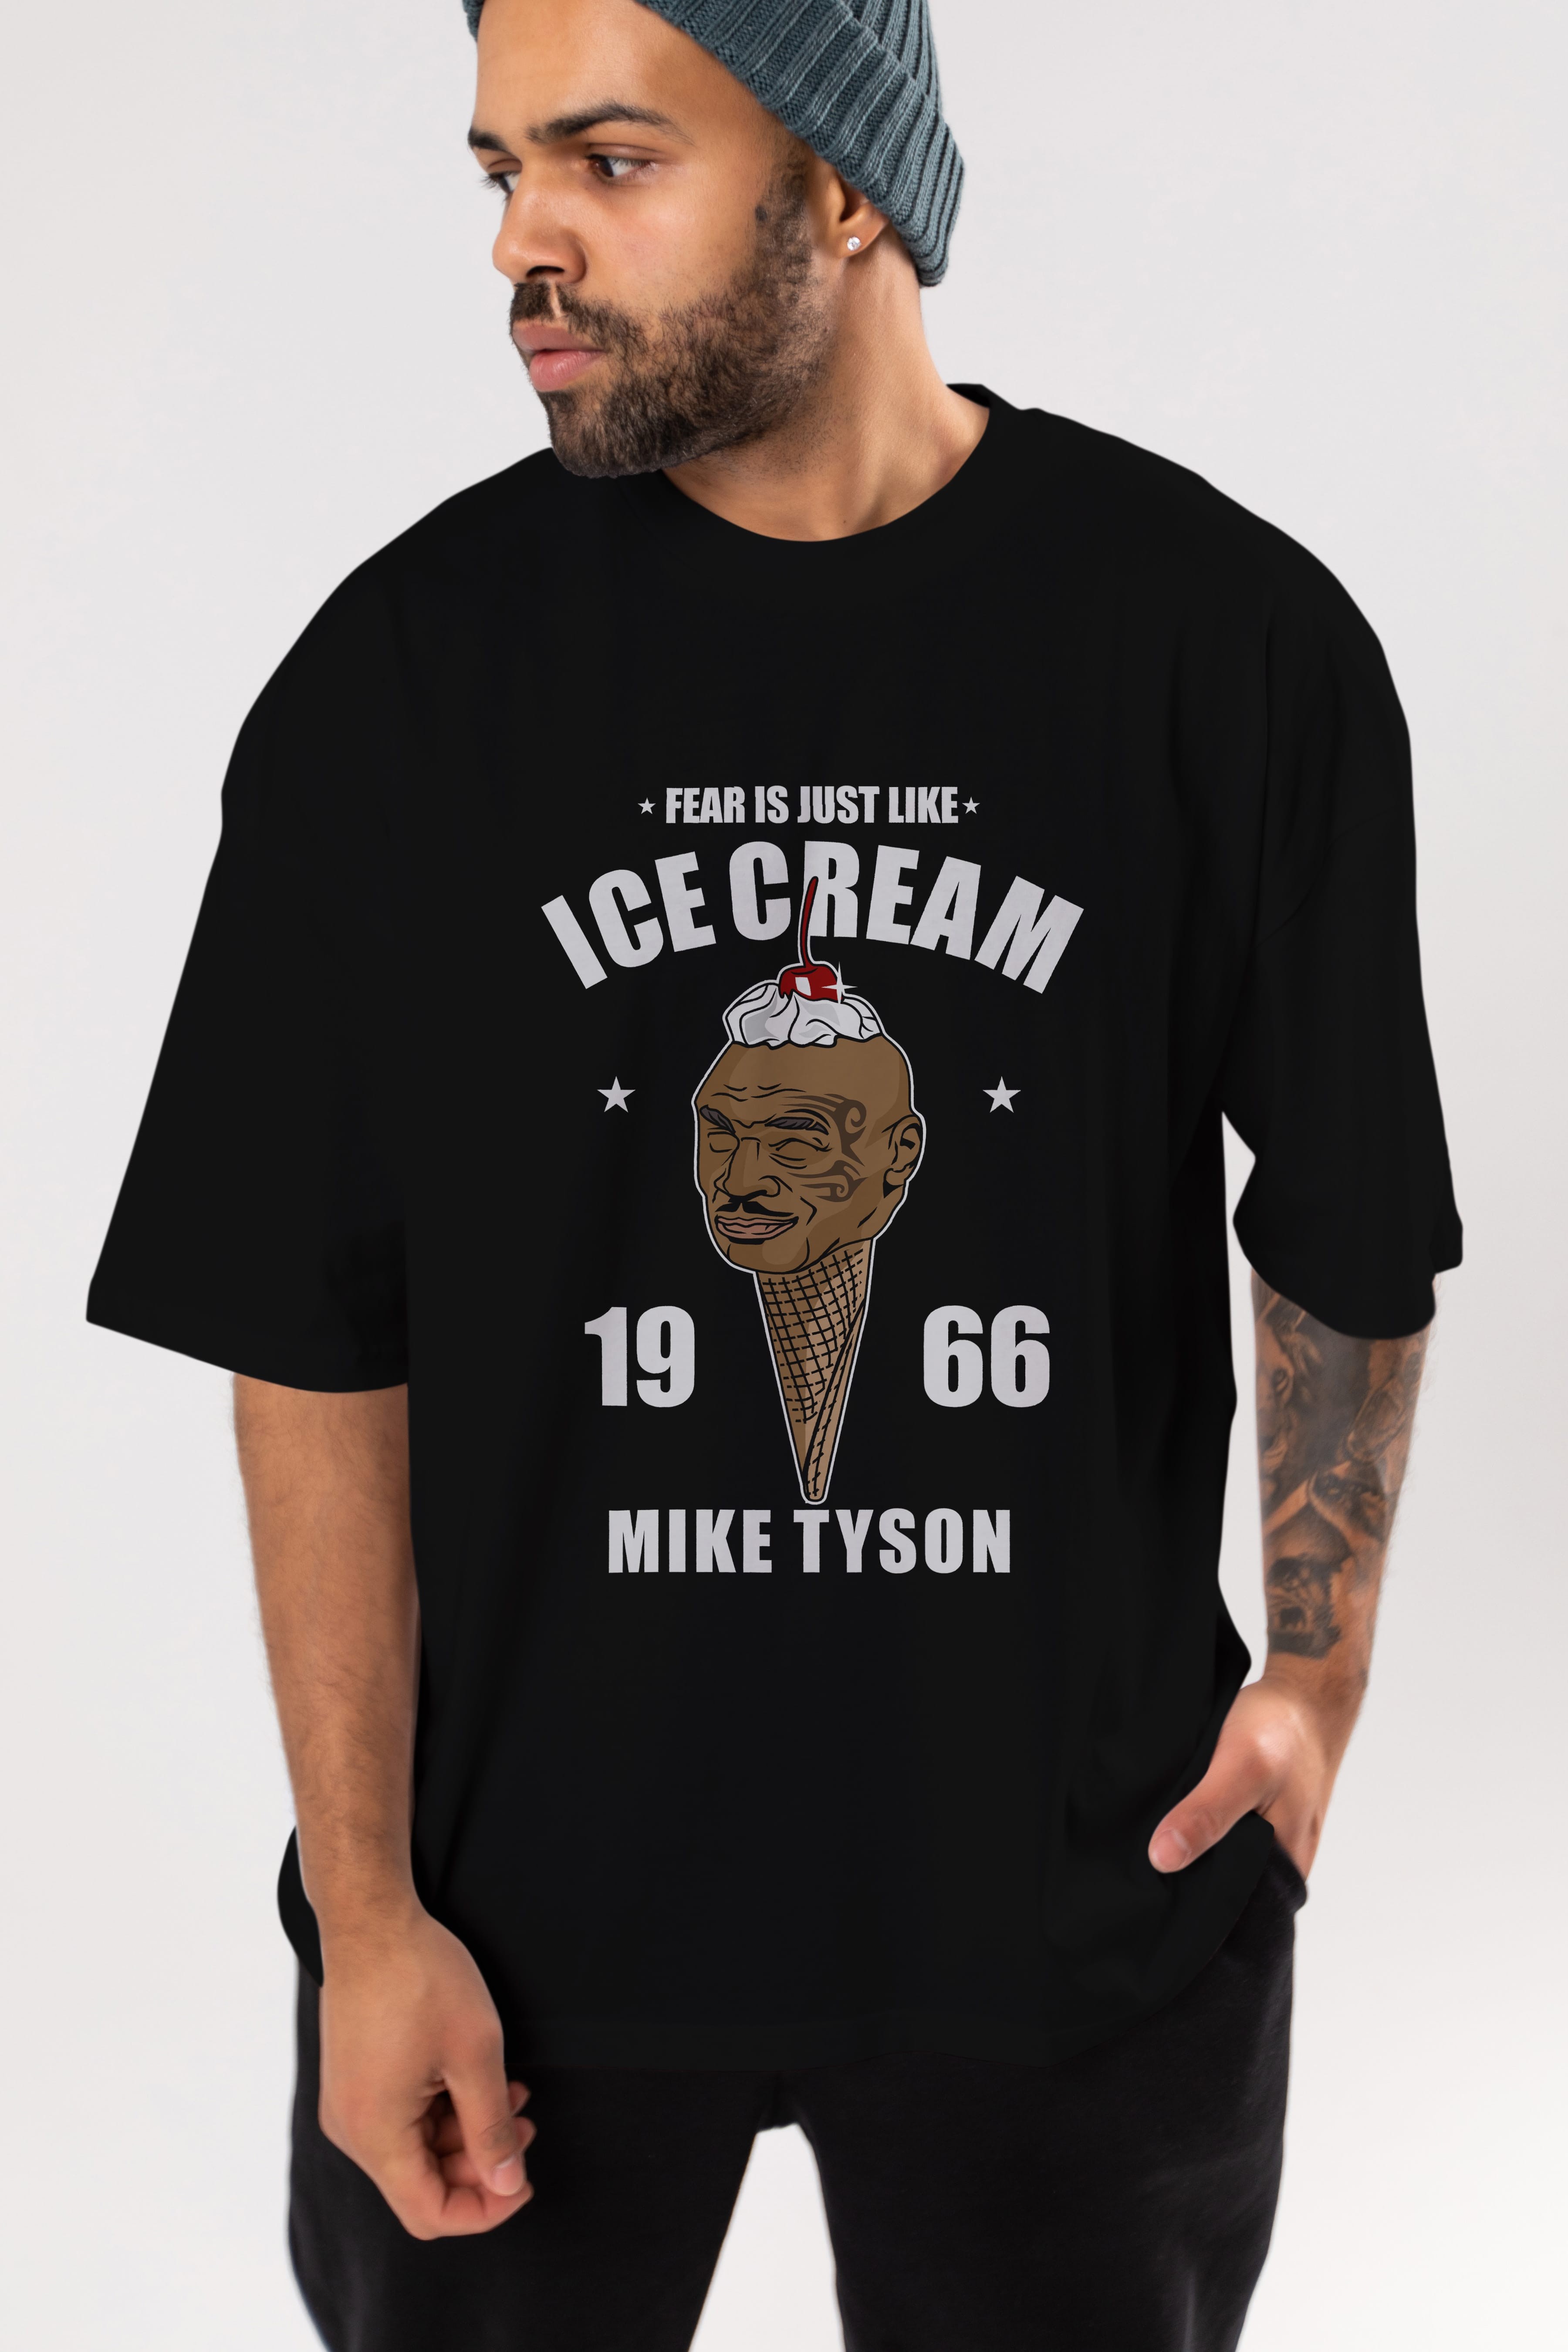 Tyson Ice Cream Ön Baskılı Oversize t-shirt Erkek Kadın Unisex %100 Pamuk tişort